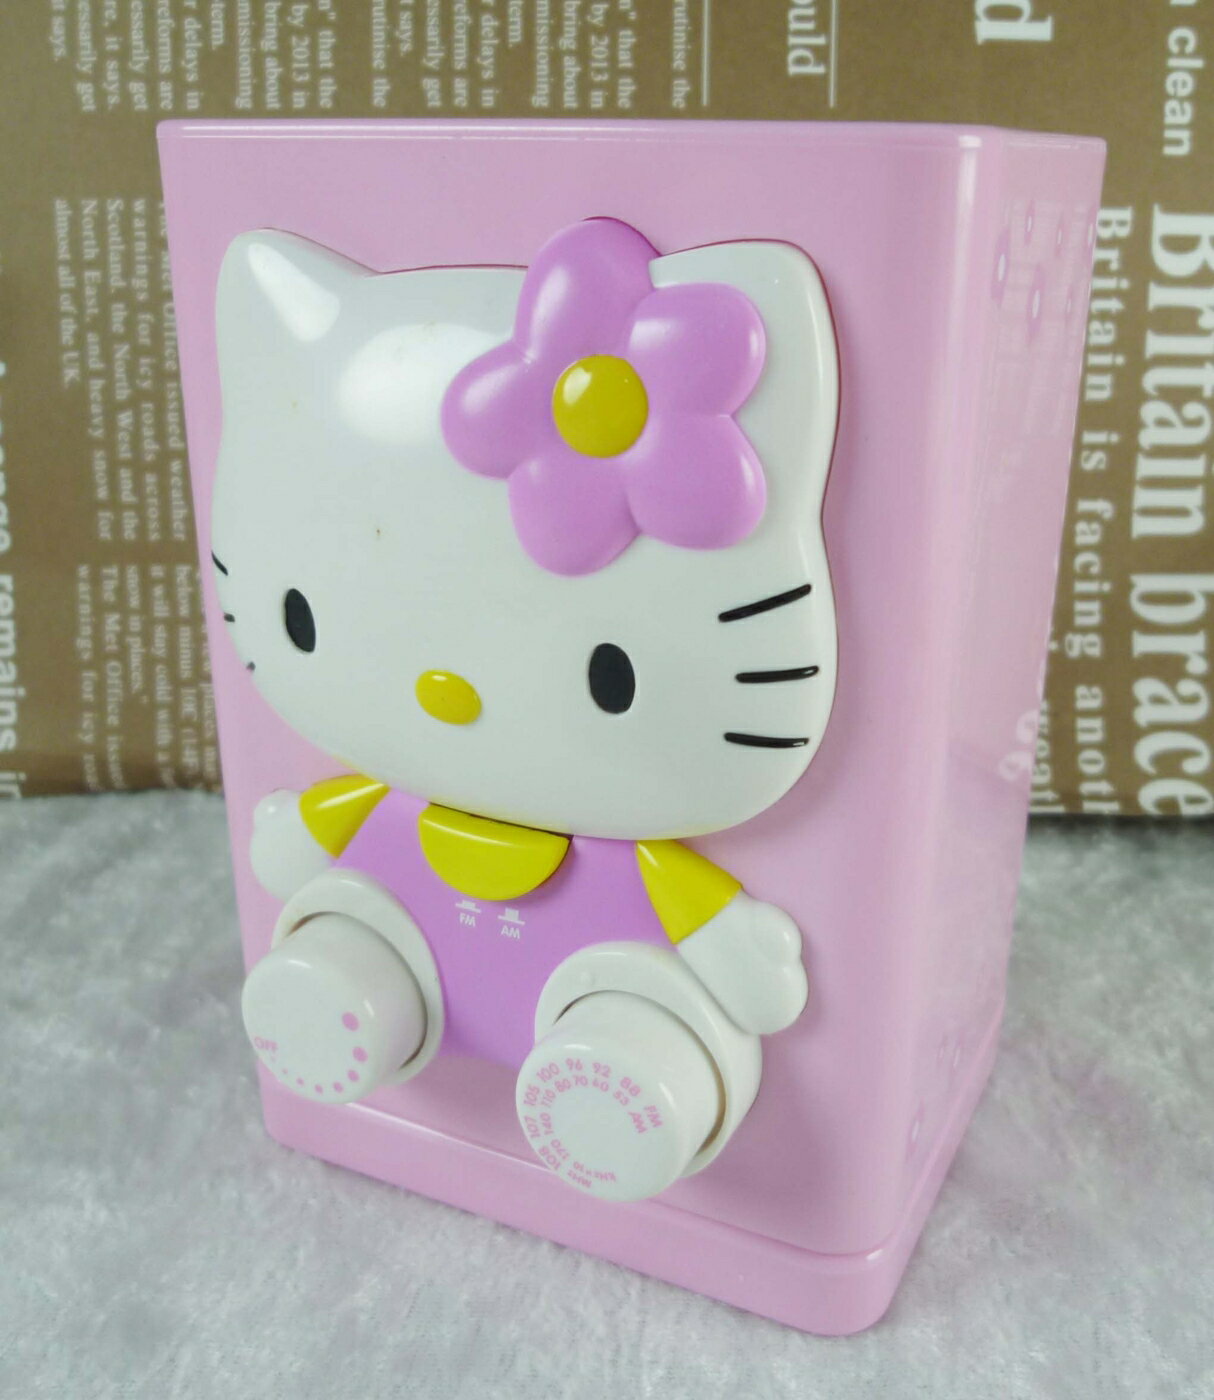 【震撼精品百貨】Hello Kitty 凱蒂貓 收音機*筆筒【共1款】 震撼日式精品百貨